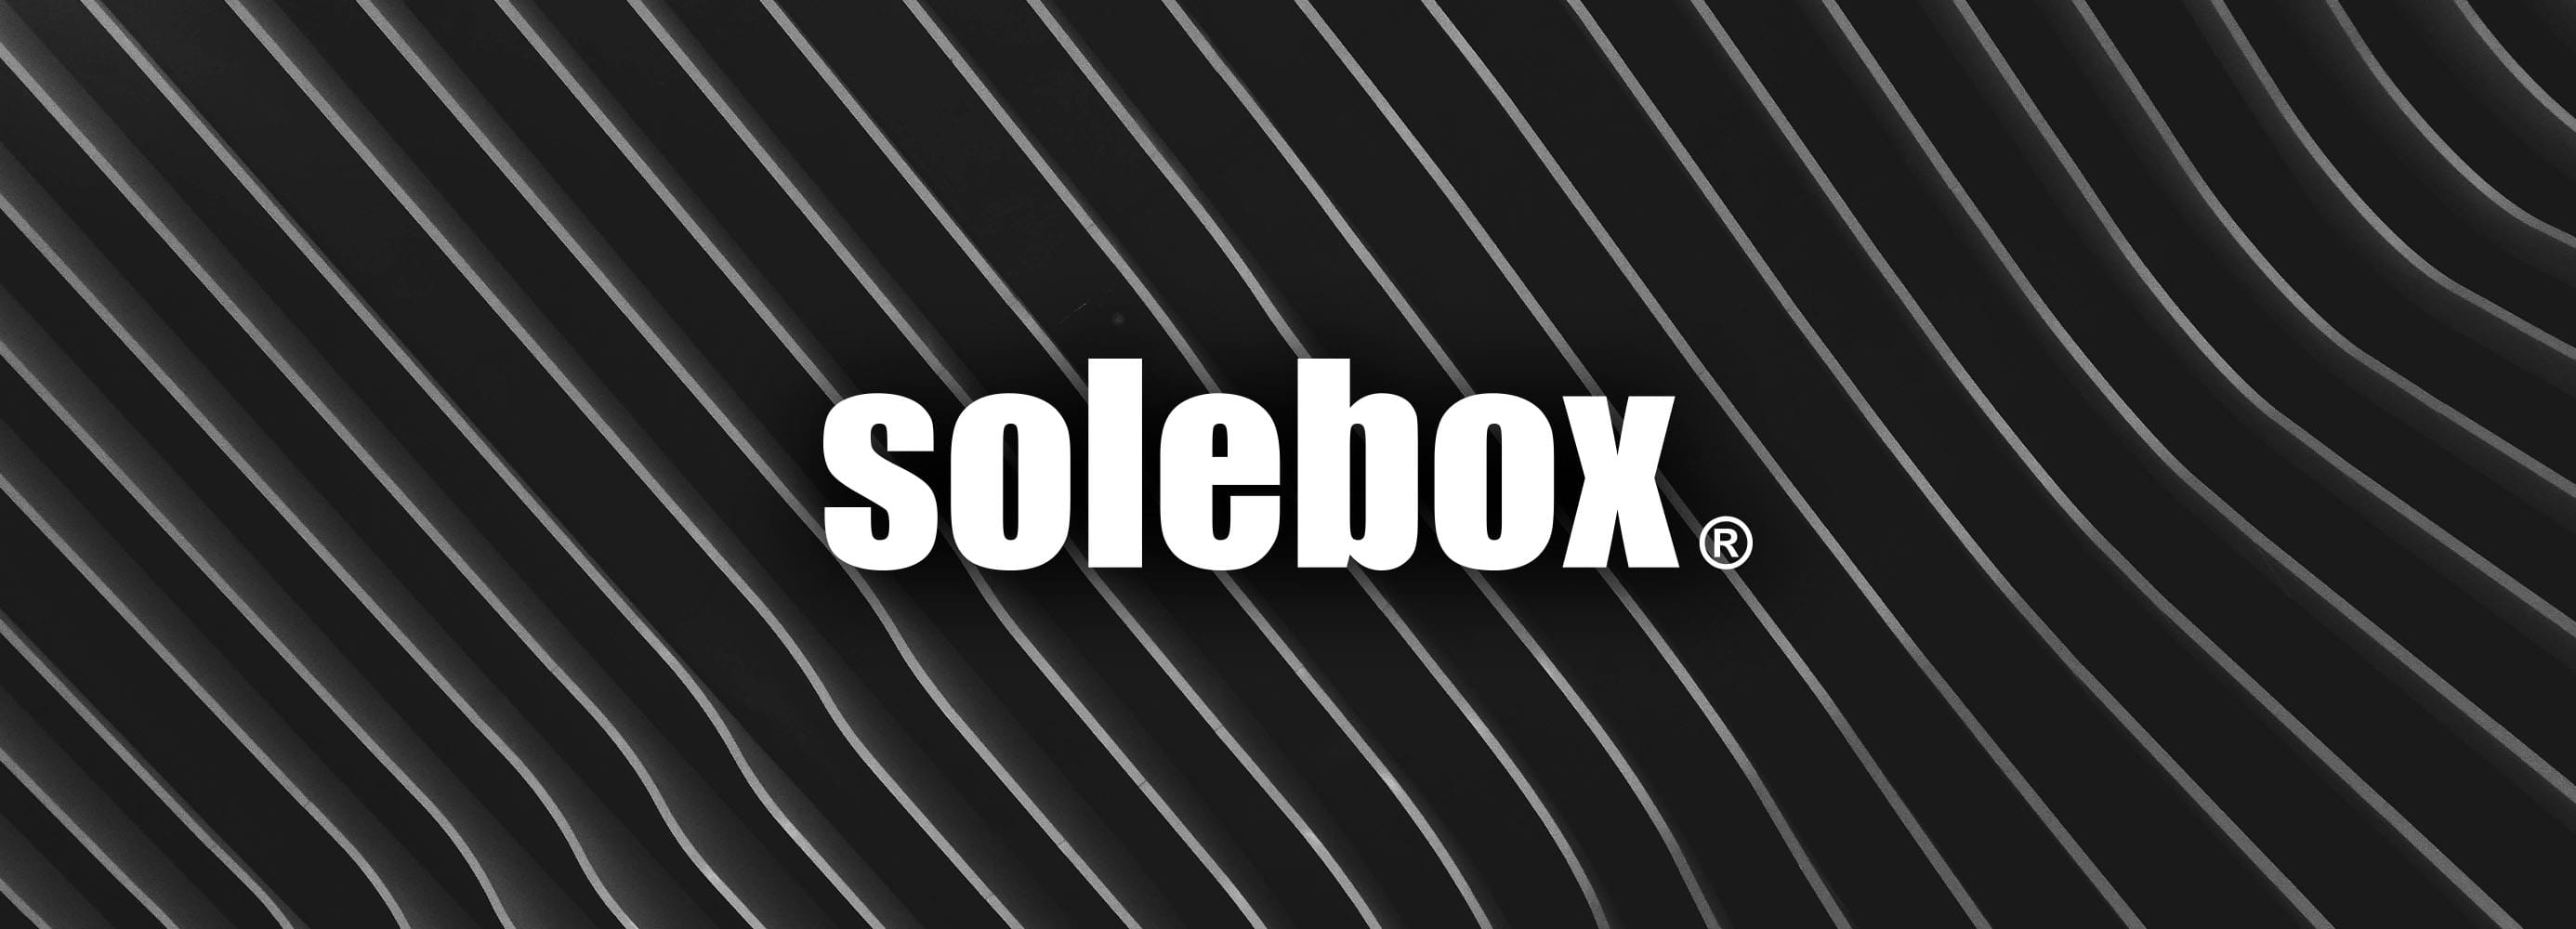 solebox x Uebervart